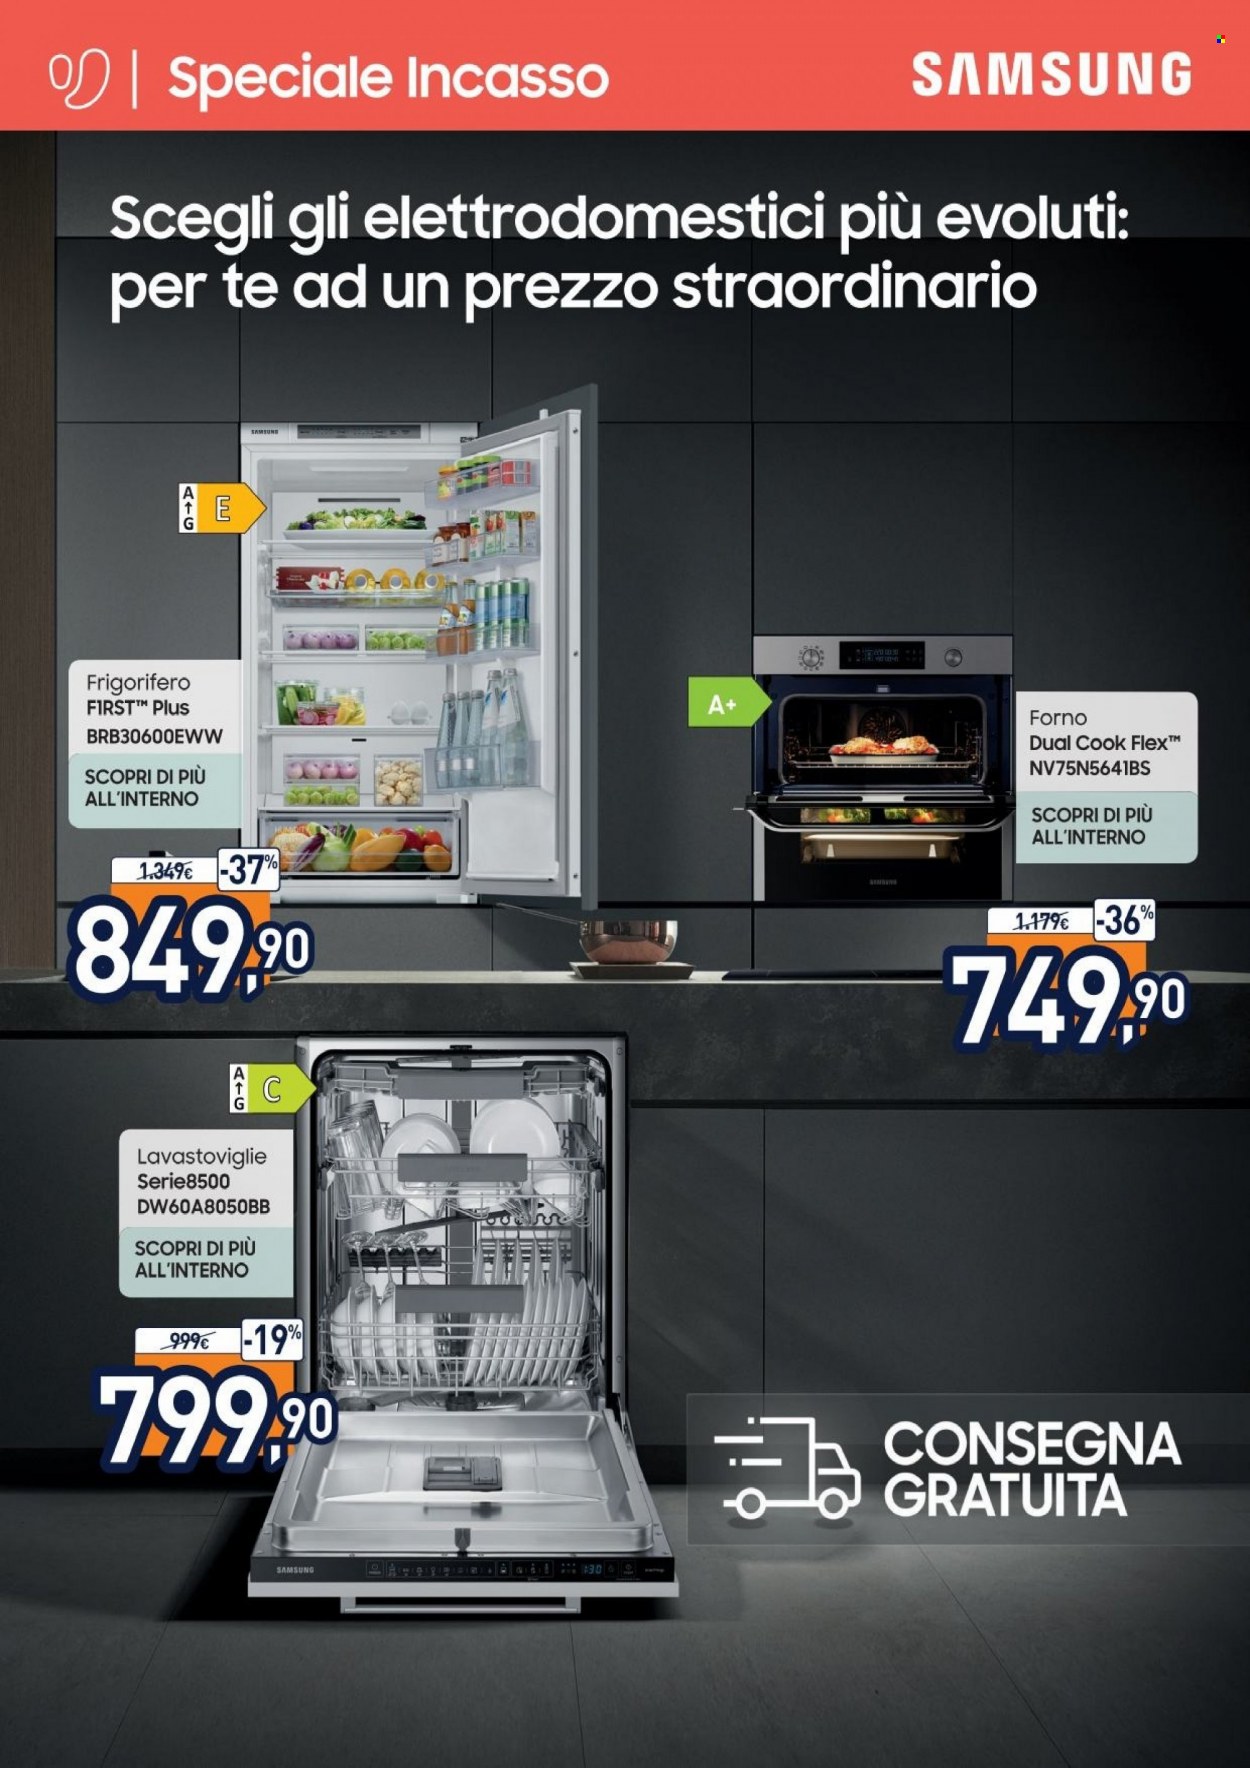 thumbnail - Volantino Unieuro - Prodotti in offerta - Samsung, frigorifero, forno, lavastoviglie. Pagina 1.